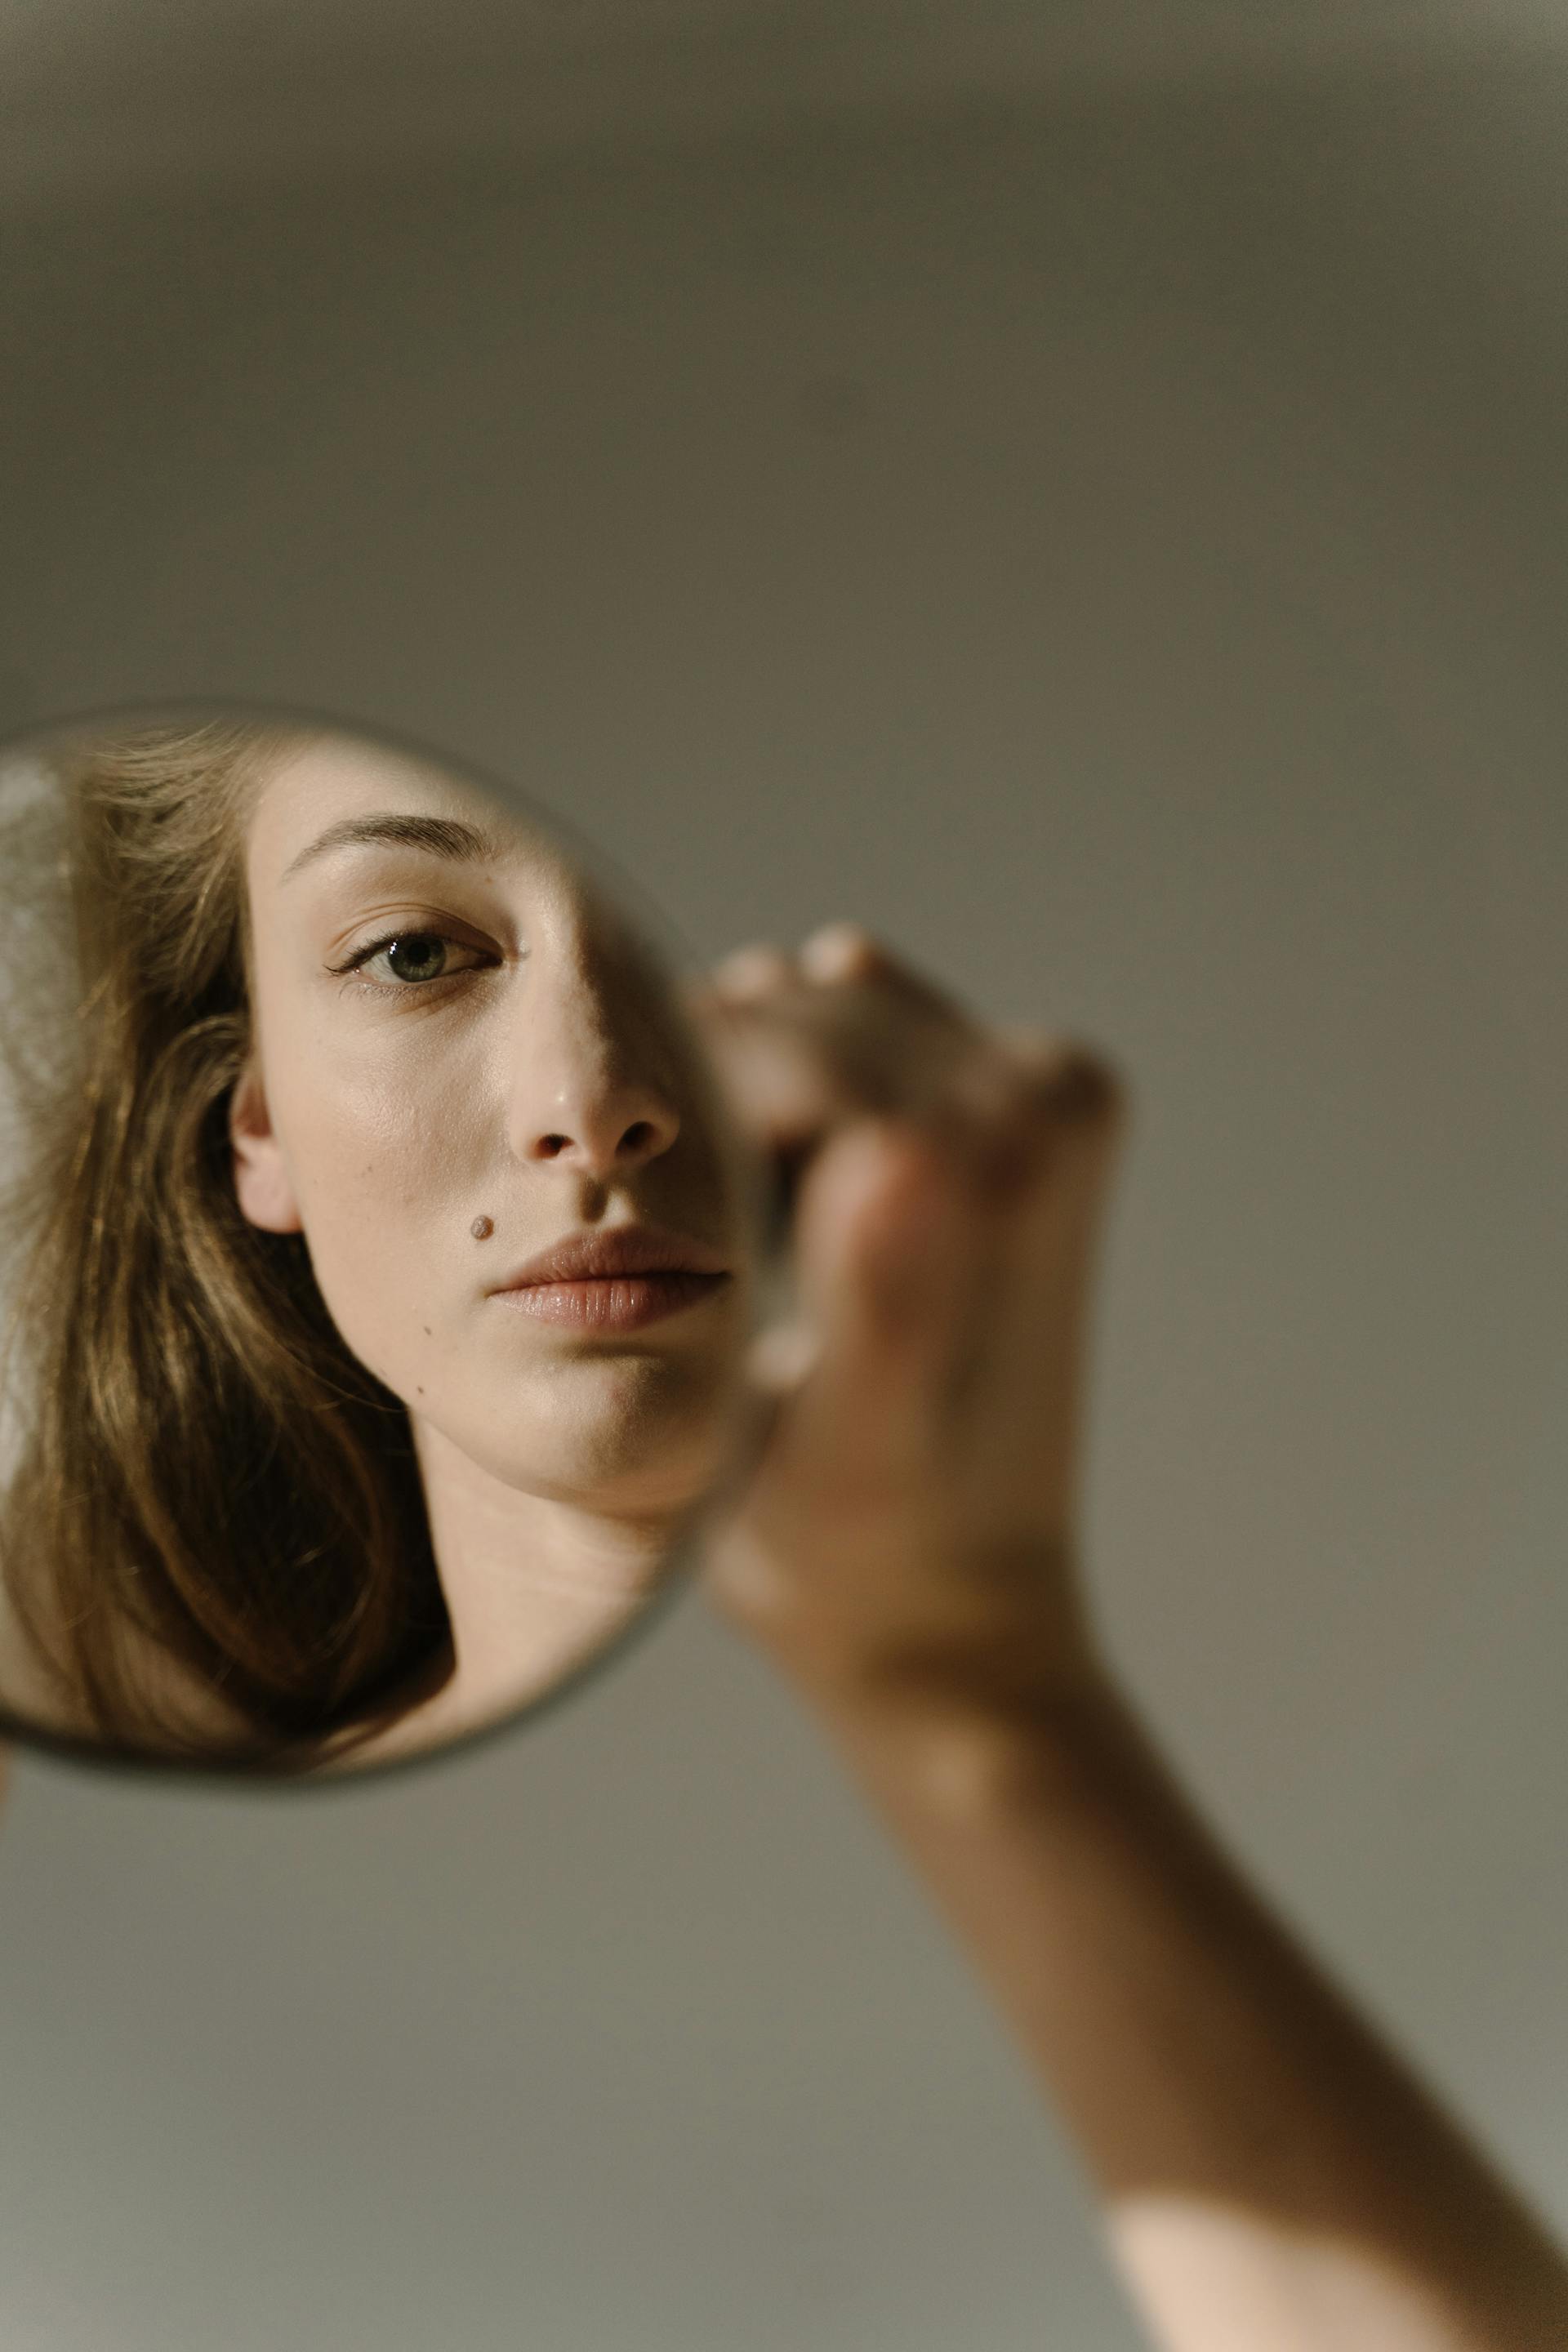 Une femme se regardant dans un miroir | Source : Pexels